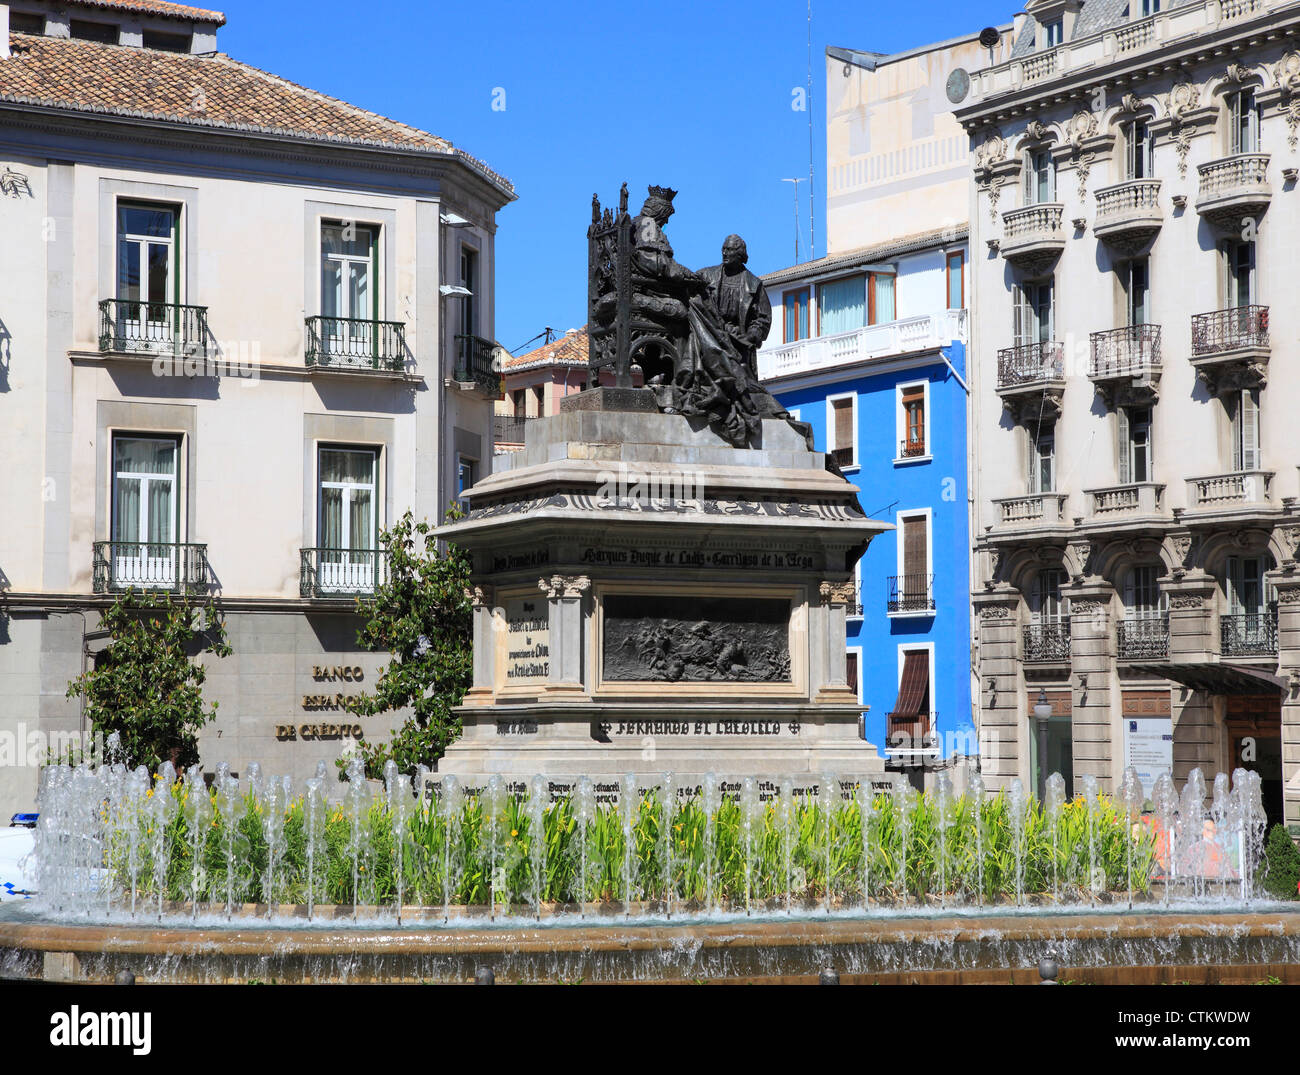 Spain, Andalusia, Granada, Plaza de Isabel la Catolica, Stock Photo